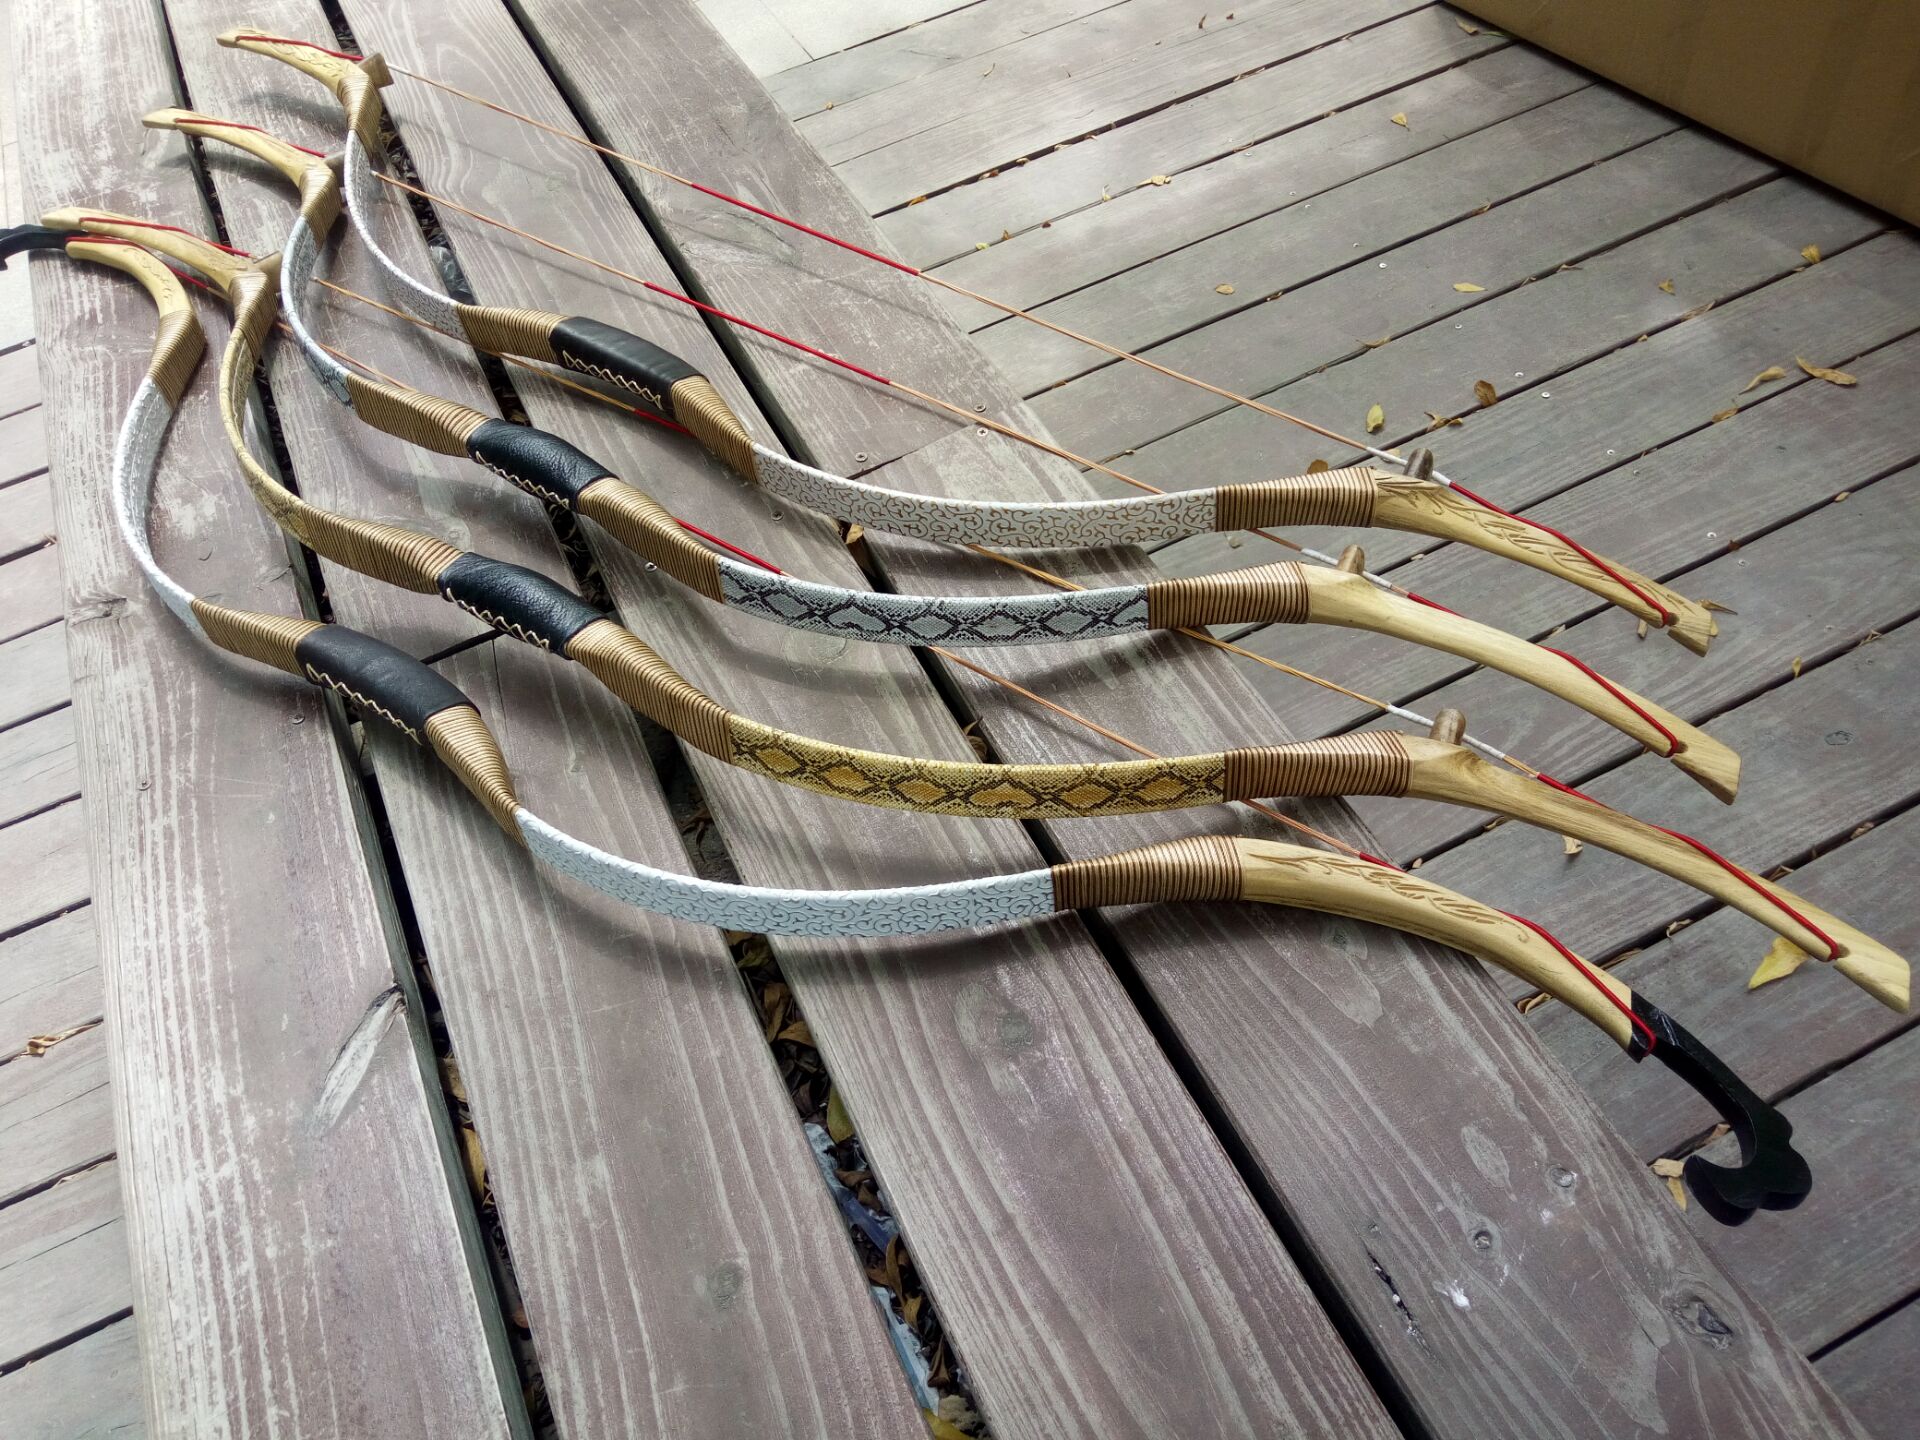 Traditional archery epoxy bows